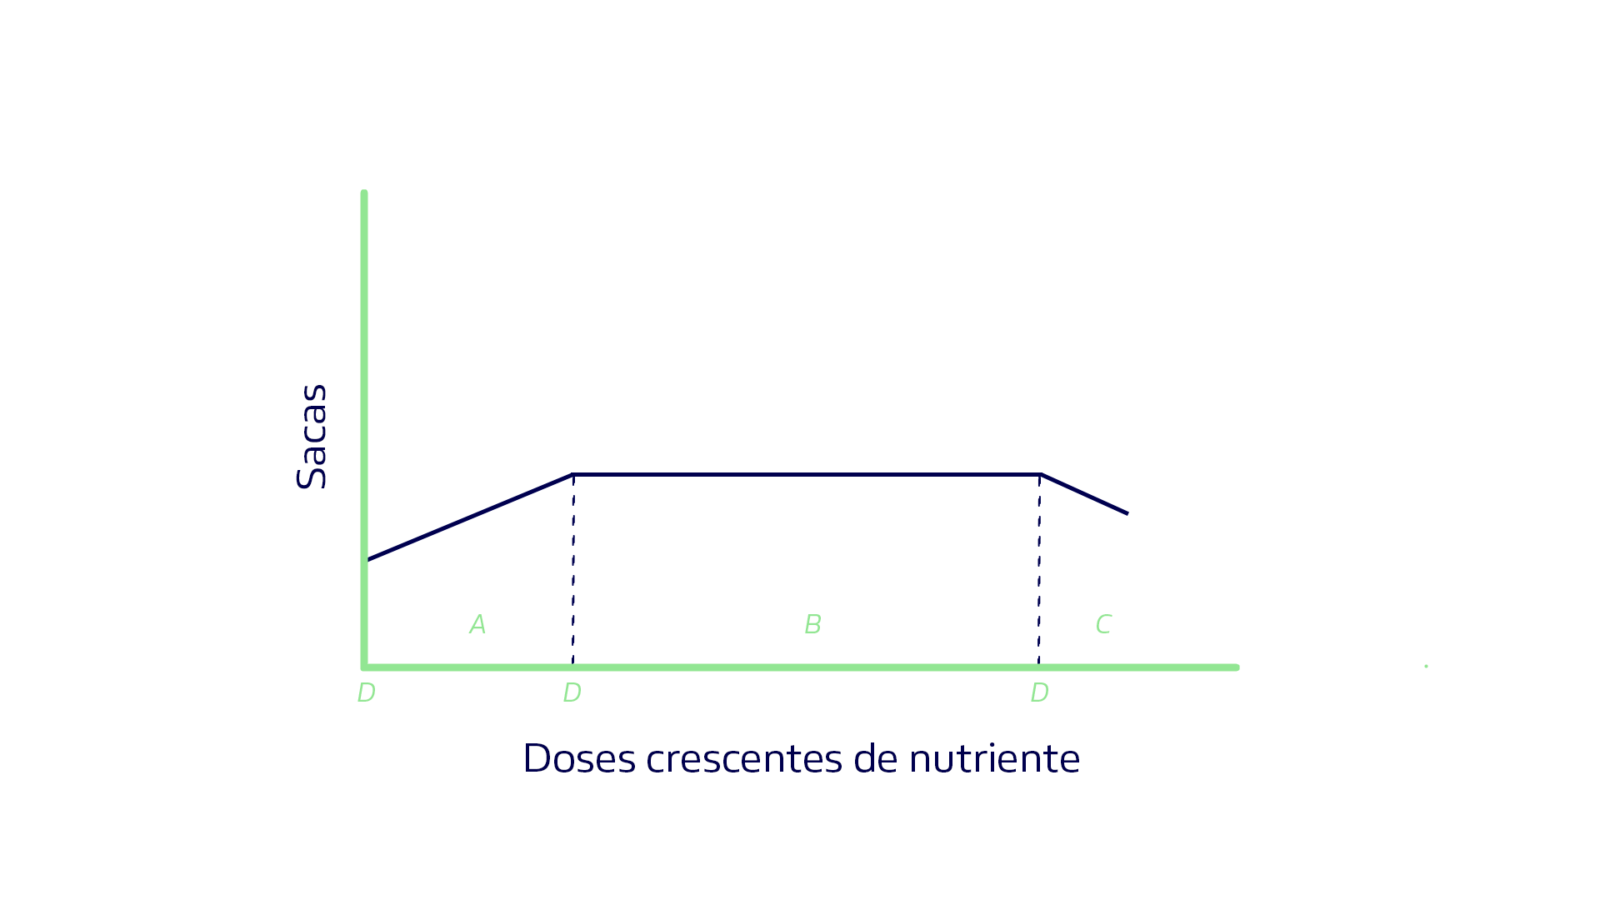 gráfico de sacas e doses crescentes de nutrientes em uma das leis gerais de adubação